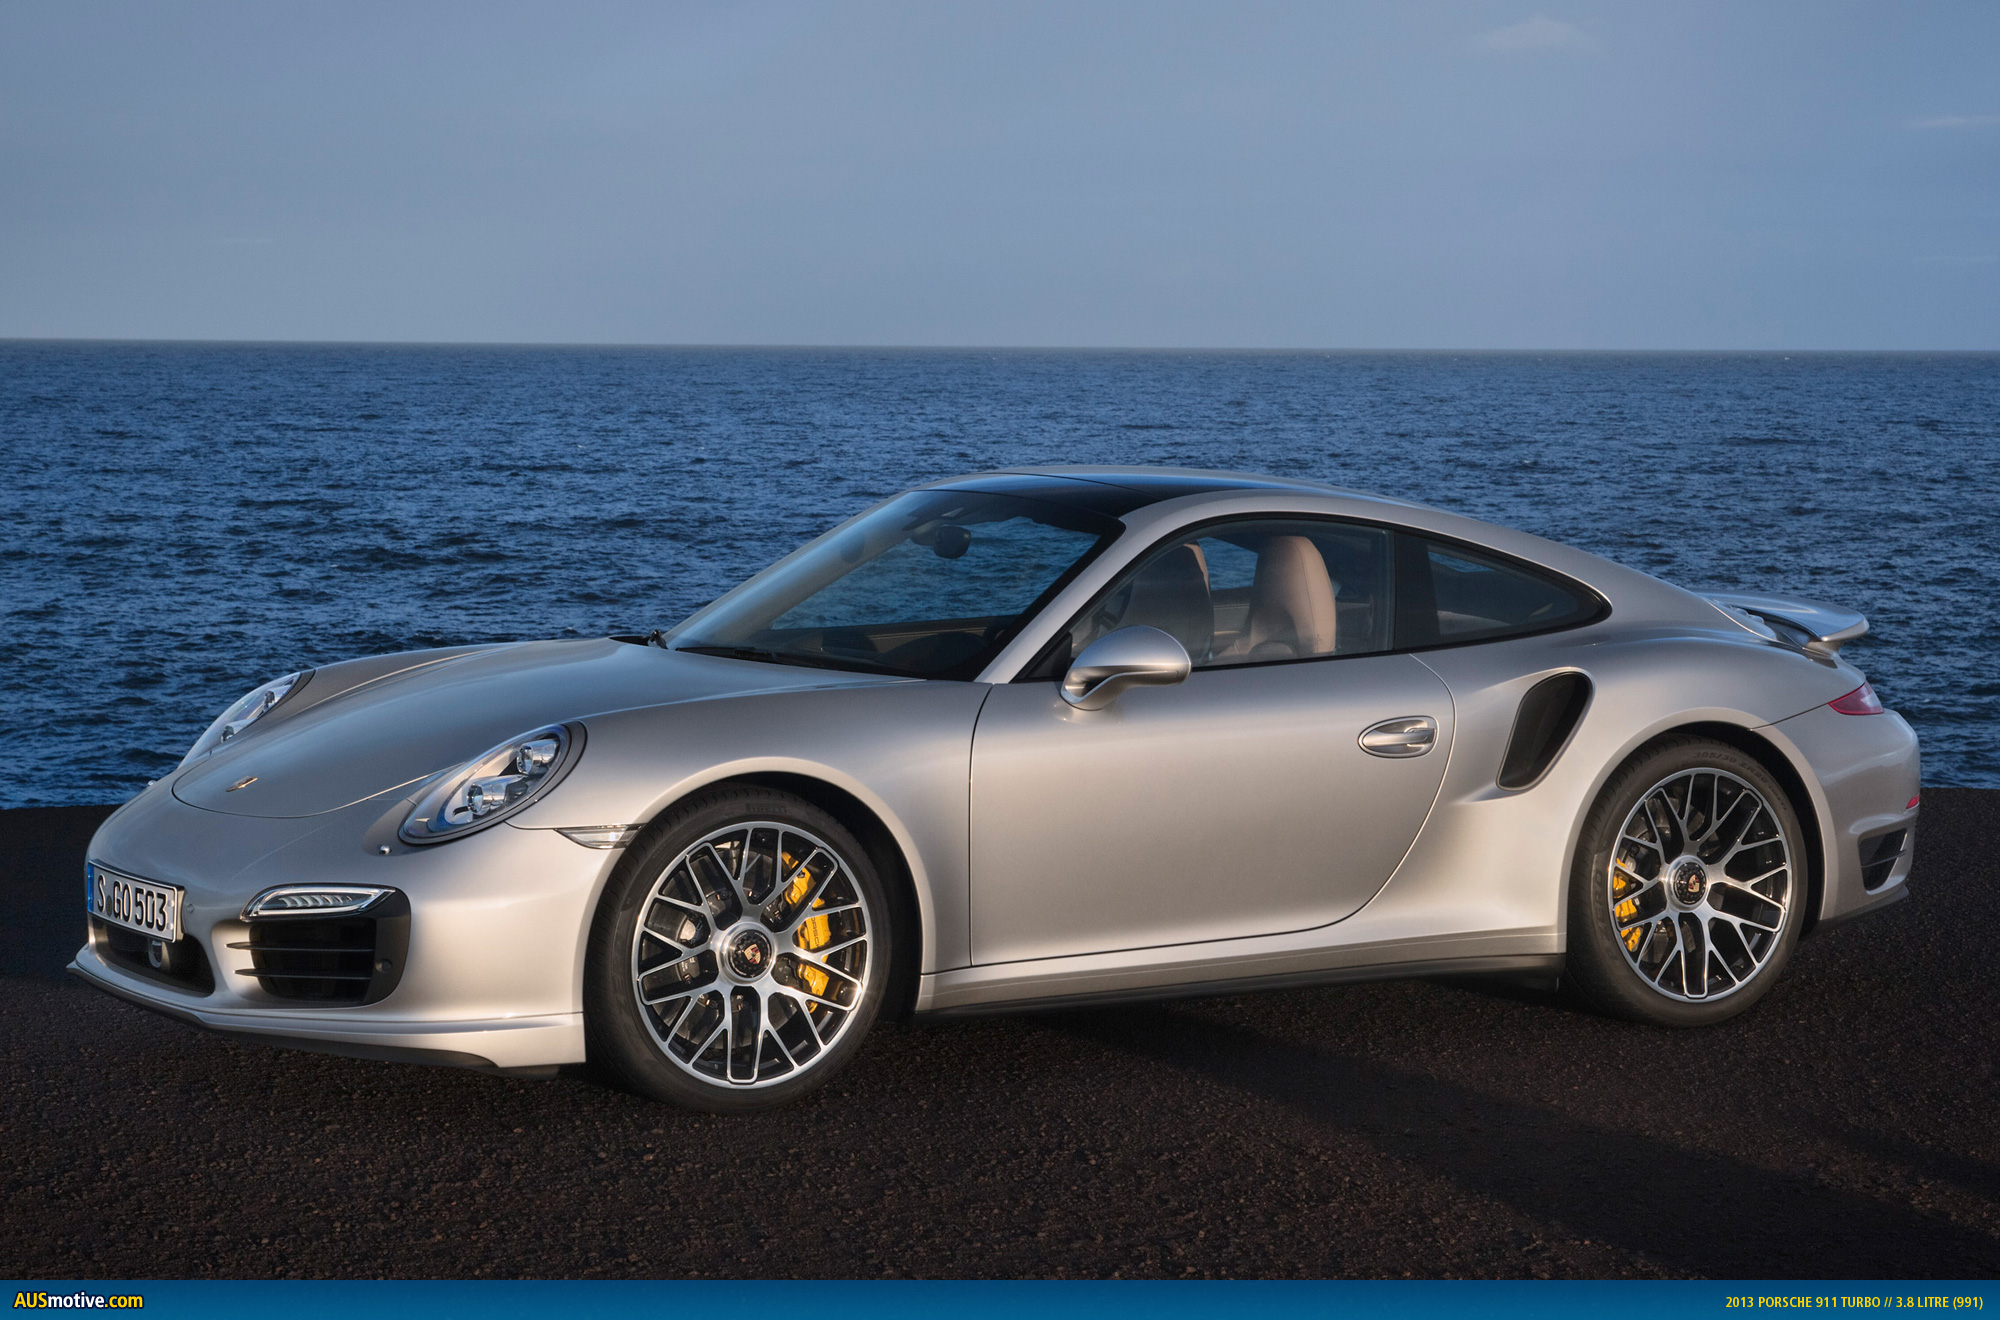 AUSmotive.com » A brief history of the Porsche 911 Turbo